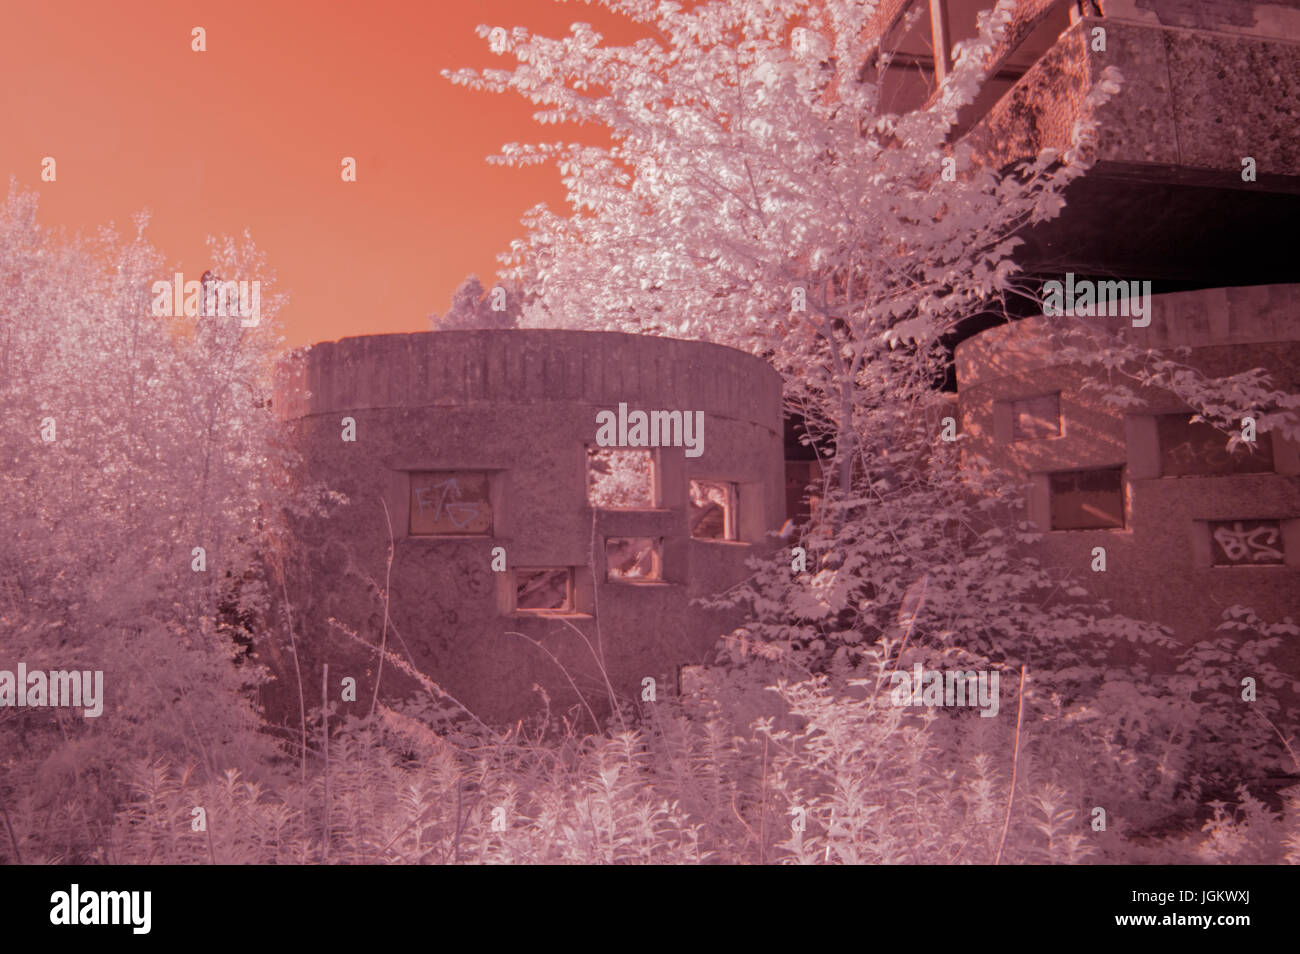 Infra Aufnahmen rot Infrarot-Fotografie Bilder der Ruinen der St.-Peter Seminar, Cardross, Schottland, 2012 Höhe seiner Baufälligkeit vor der Restaurierung Stockfoto